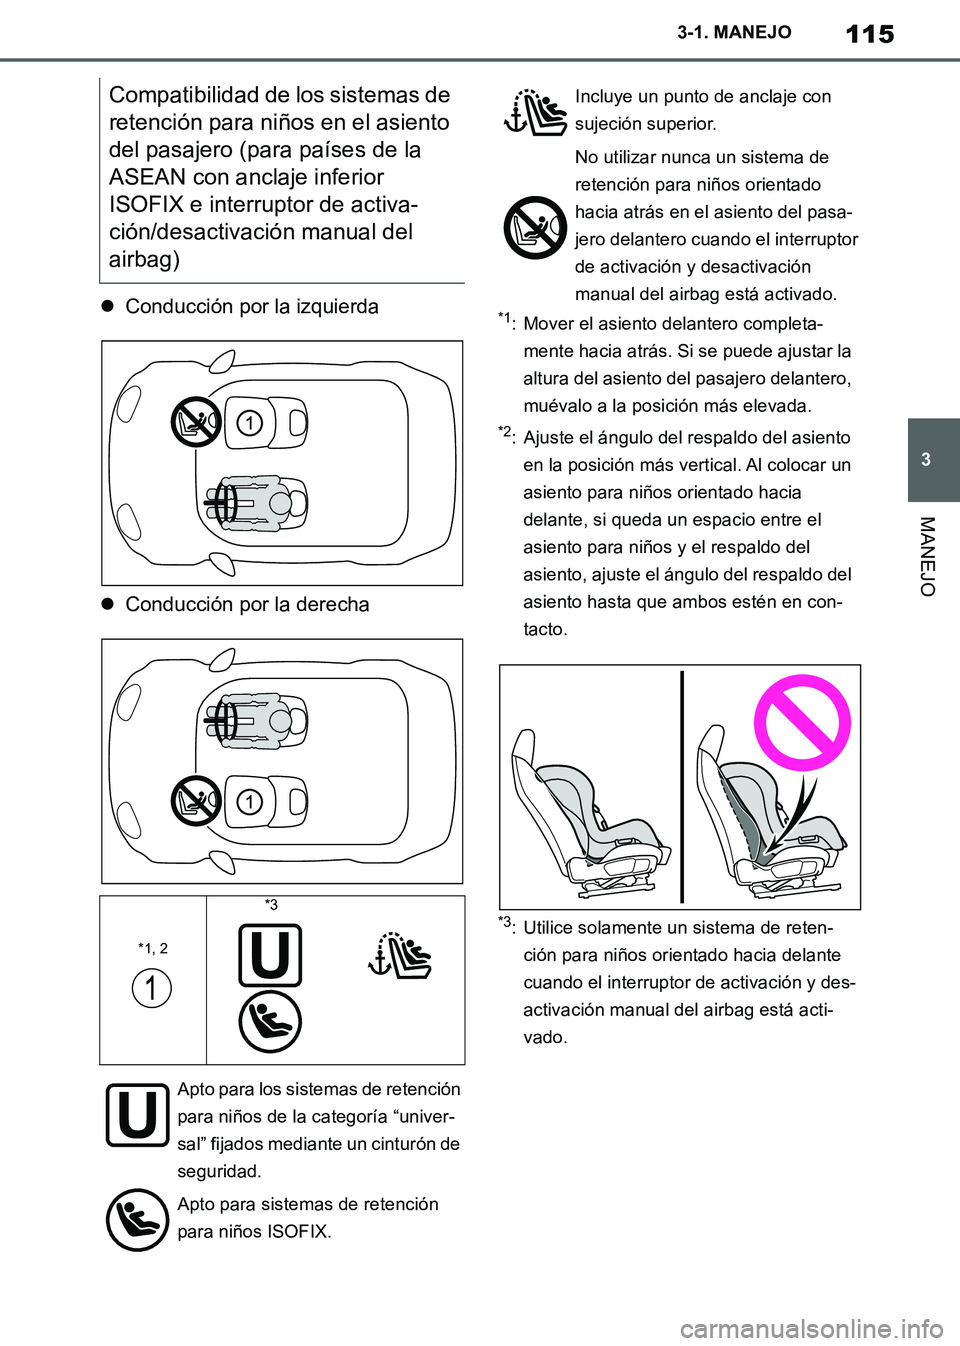 TOYOTA SUPRA 2019  Manuale de Empleo (in Spanish) 115
3
Supra Owners Manual_ES
3-1. MANEJO
MANEJO
Conducción por la izquierda
Conducción por la derecha*1: Mover el asiento delantero completa-
mente hacia atrás. Si se puede ajustar la 
altur